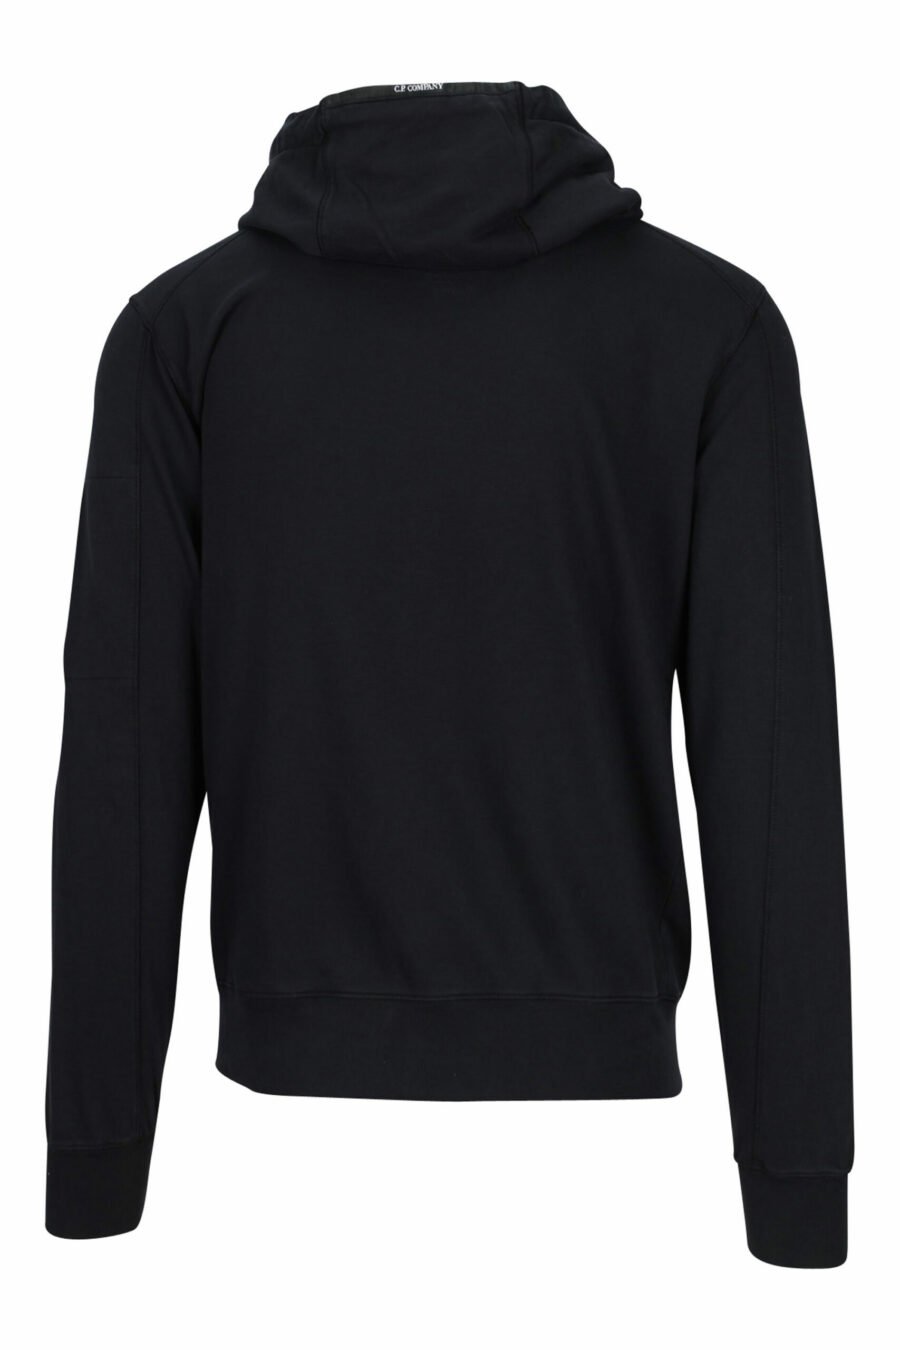 Schwarzes Kapuzensweatshirt mit Reißverschluss und seitlichem Linsenlogo - 7620943592603 2 skaliert